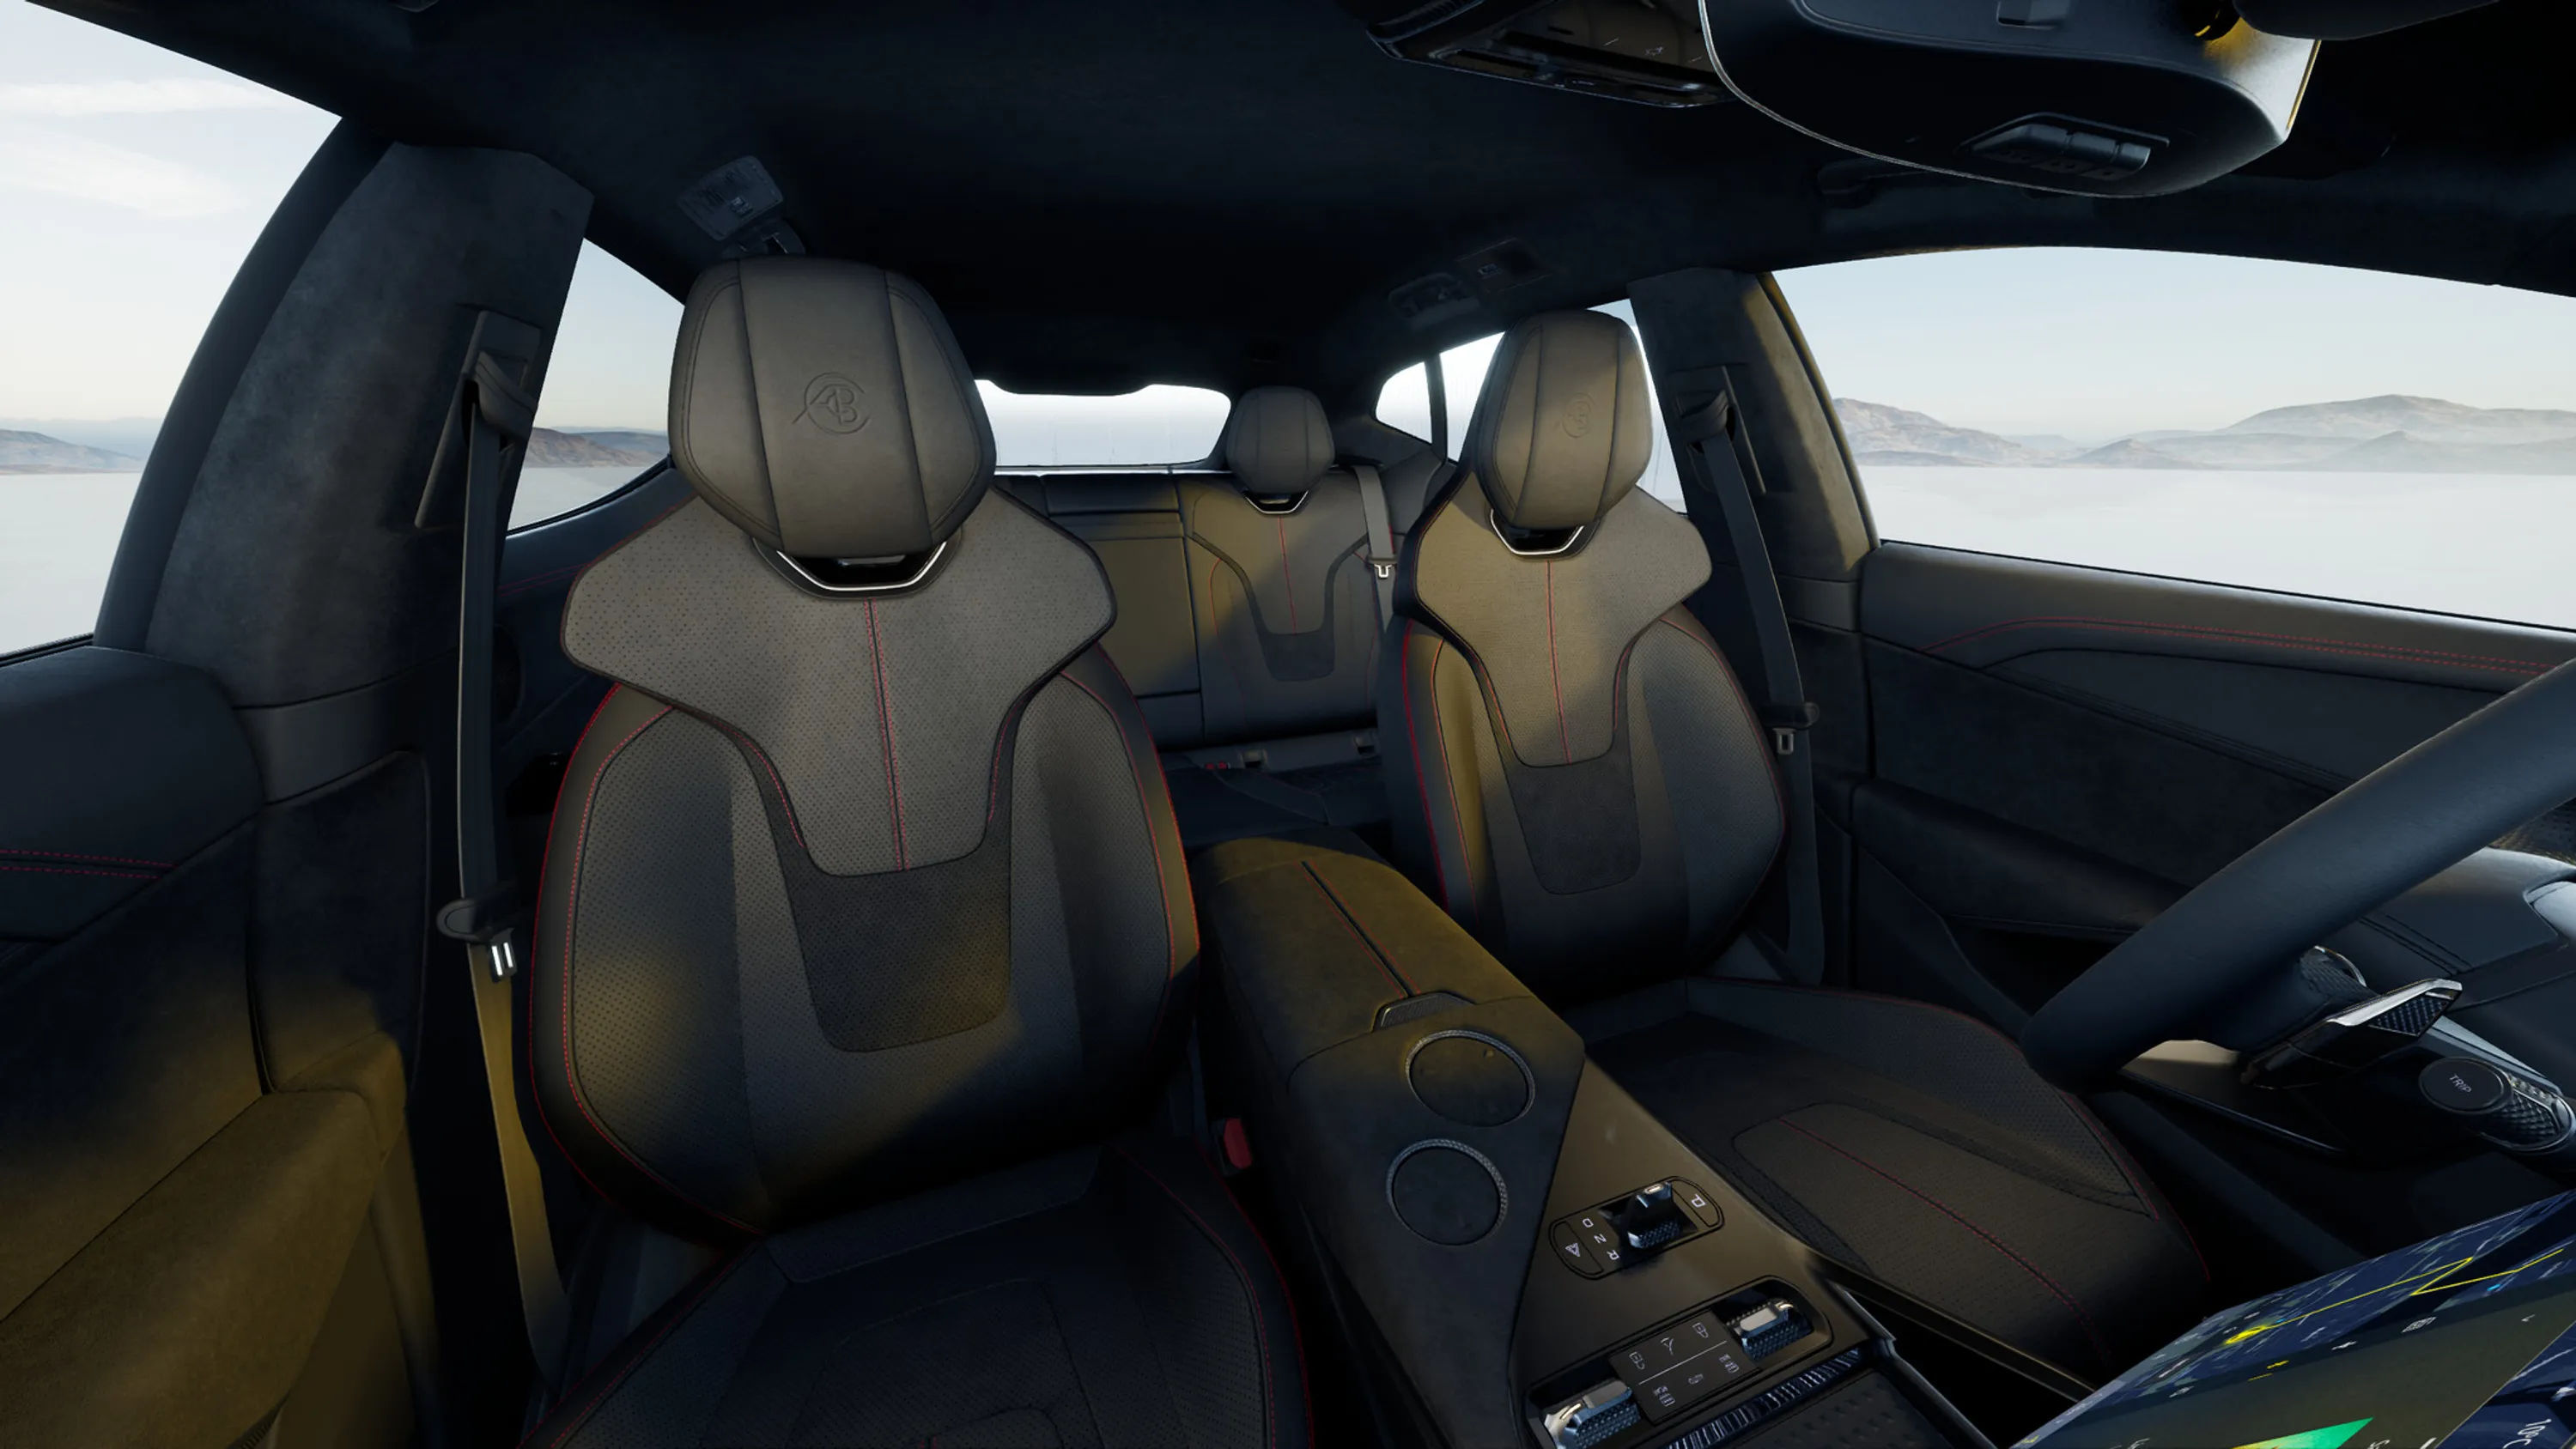 lambda-car-config-seats-five-luxury-eu